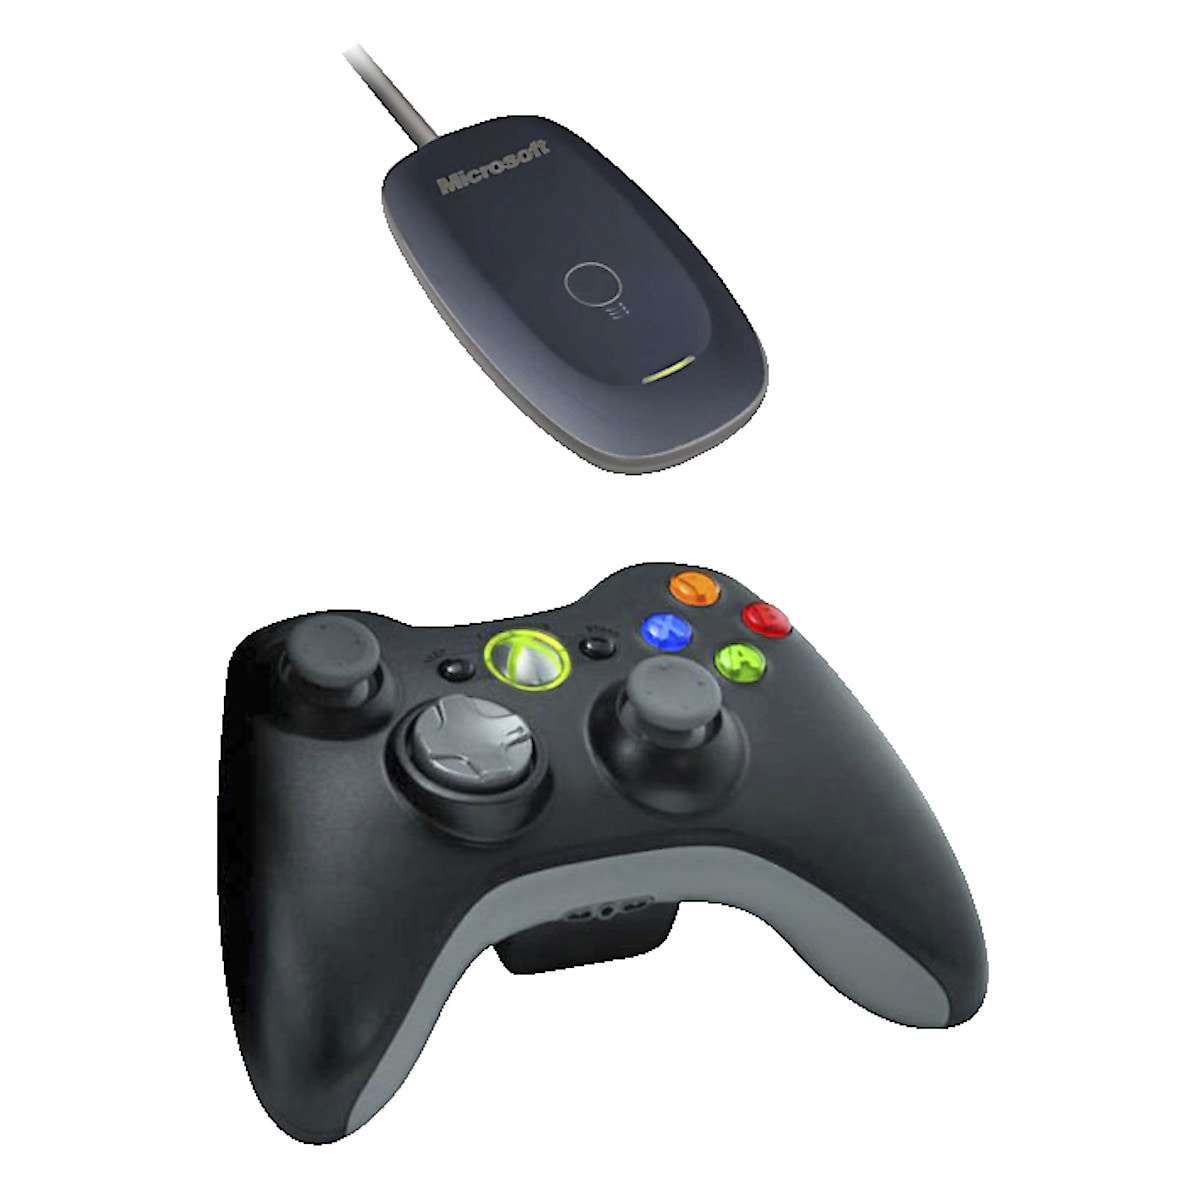 Trådlös handkontroll för PC och Xbox 360, Microsoft